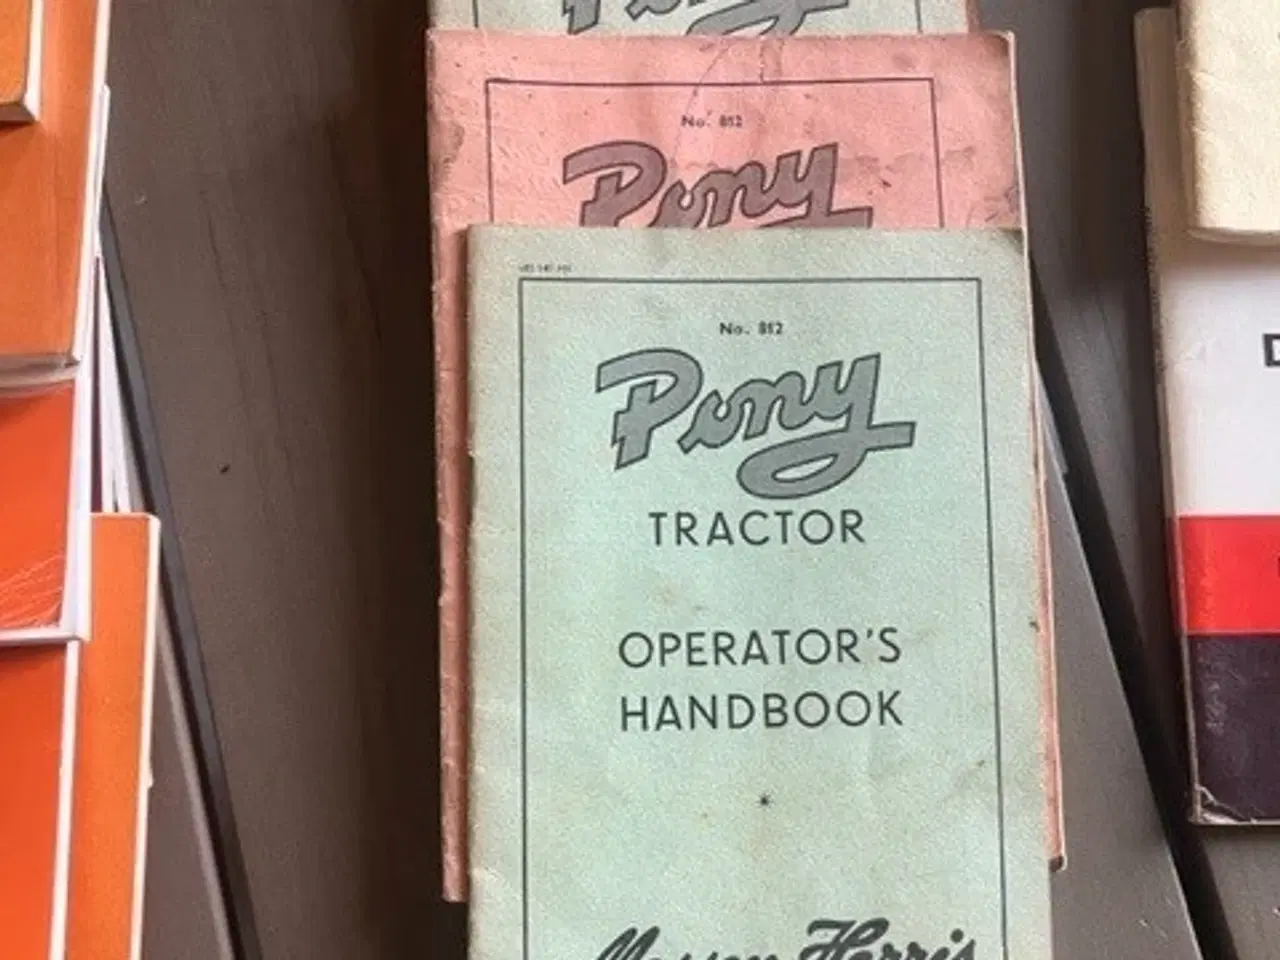 Billede 2 - instruktionsbøger til gamle traktorer